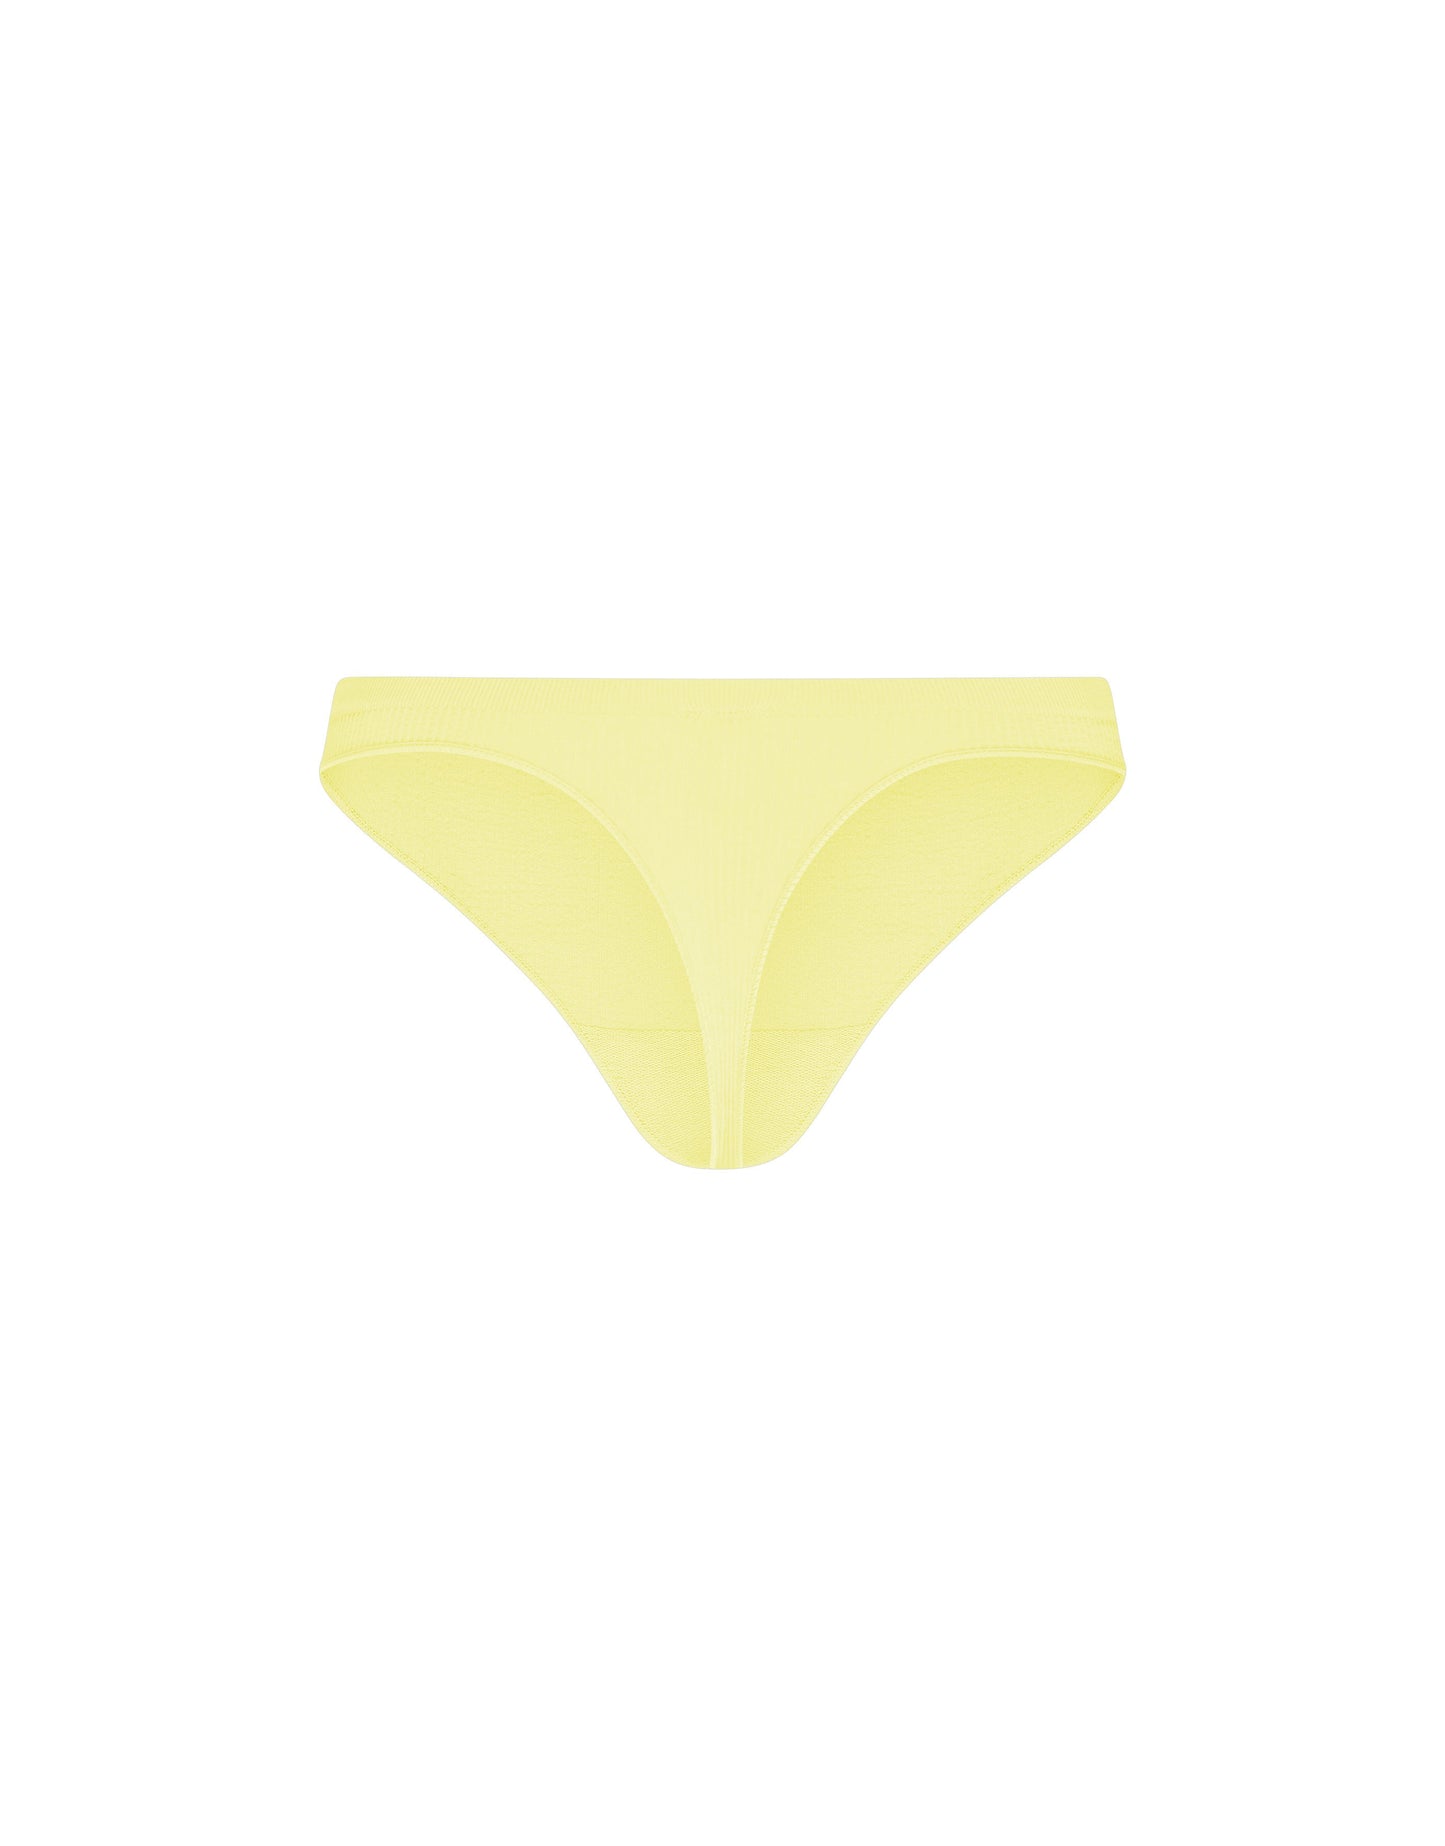 STAX. Premium Seamless V5.1 (Favourites) Sports G-String - Lemon (Yellow)